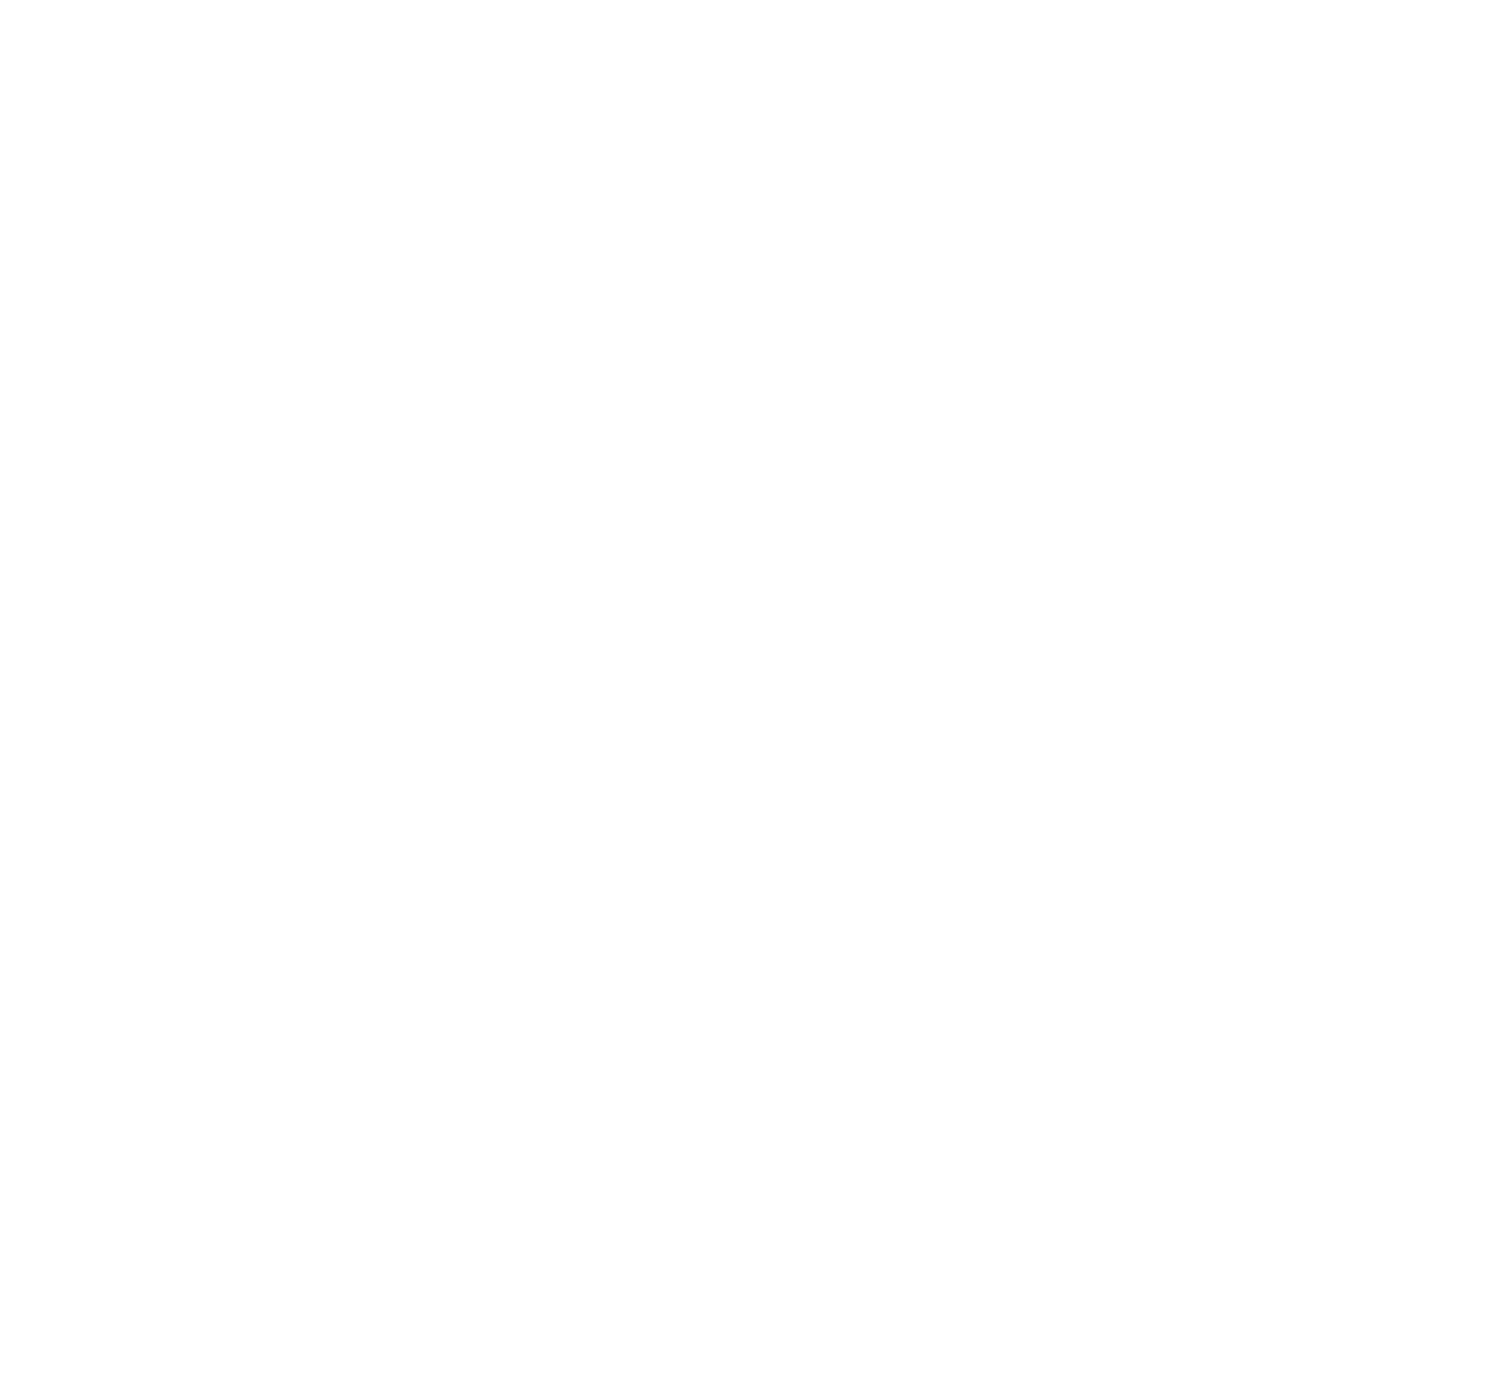 Blessing Thai Restaurant